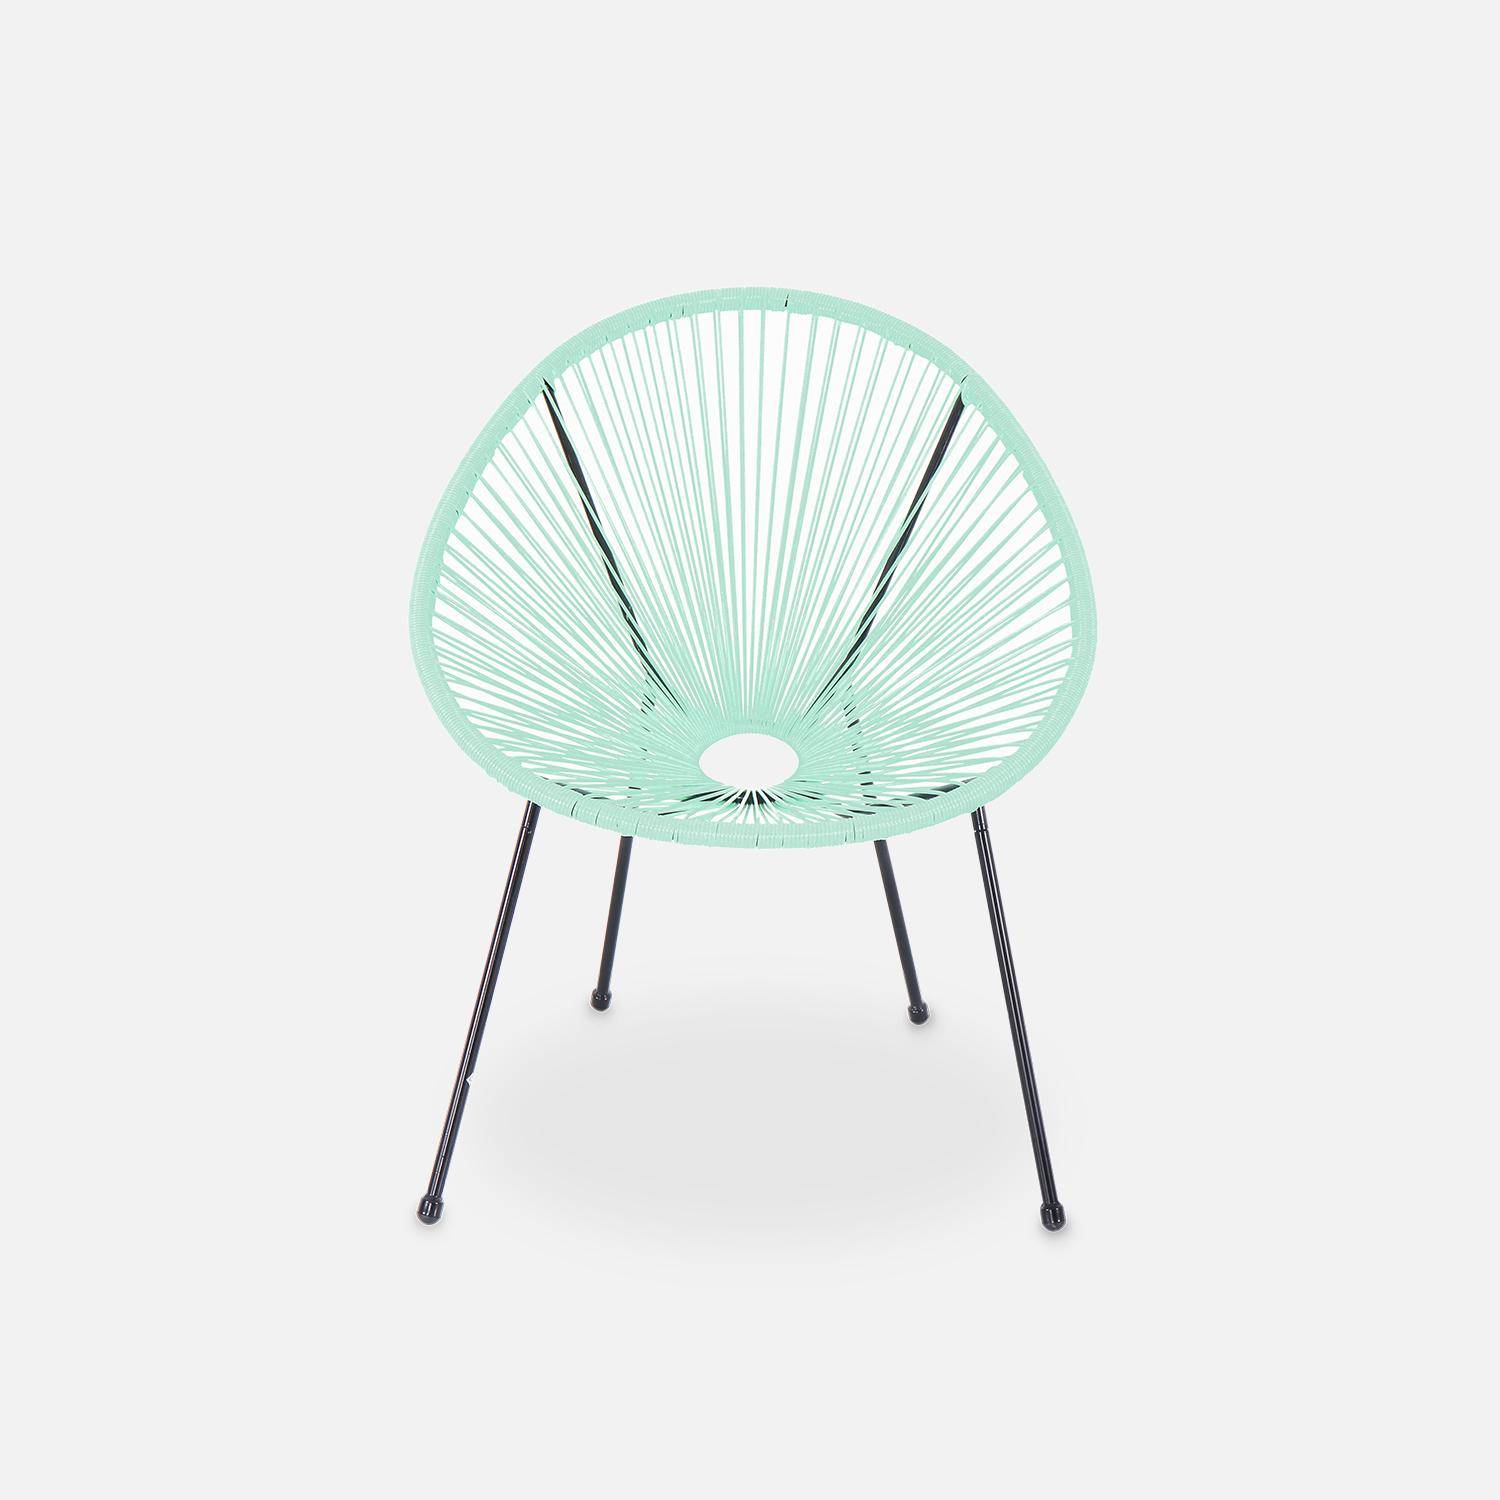 ACAPULCO stoel ei-vormig Watergroen- Stoel 4 poten retro design, plastic koorden, binnen/buiten Photo3